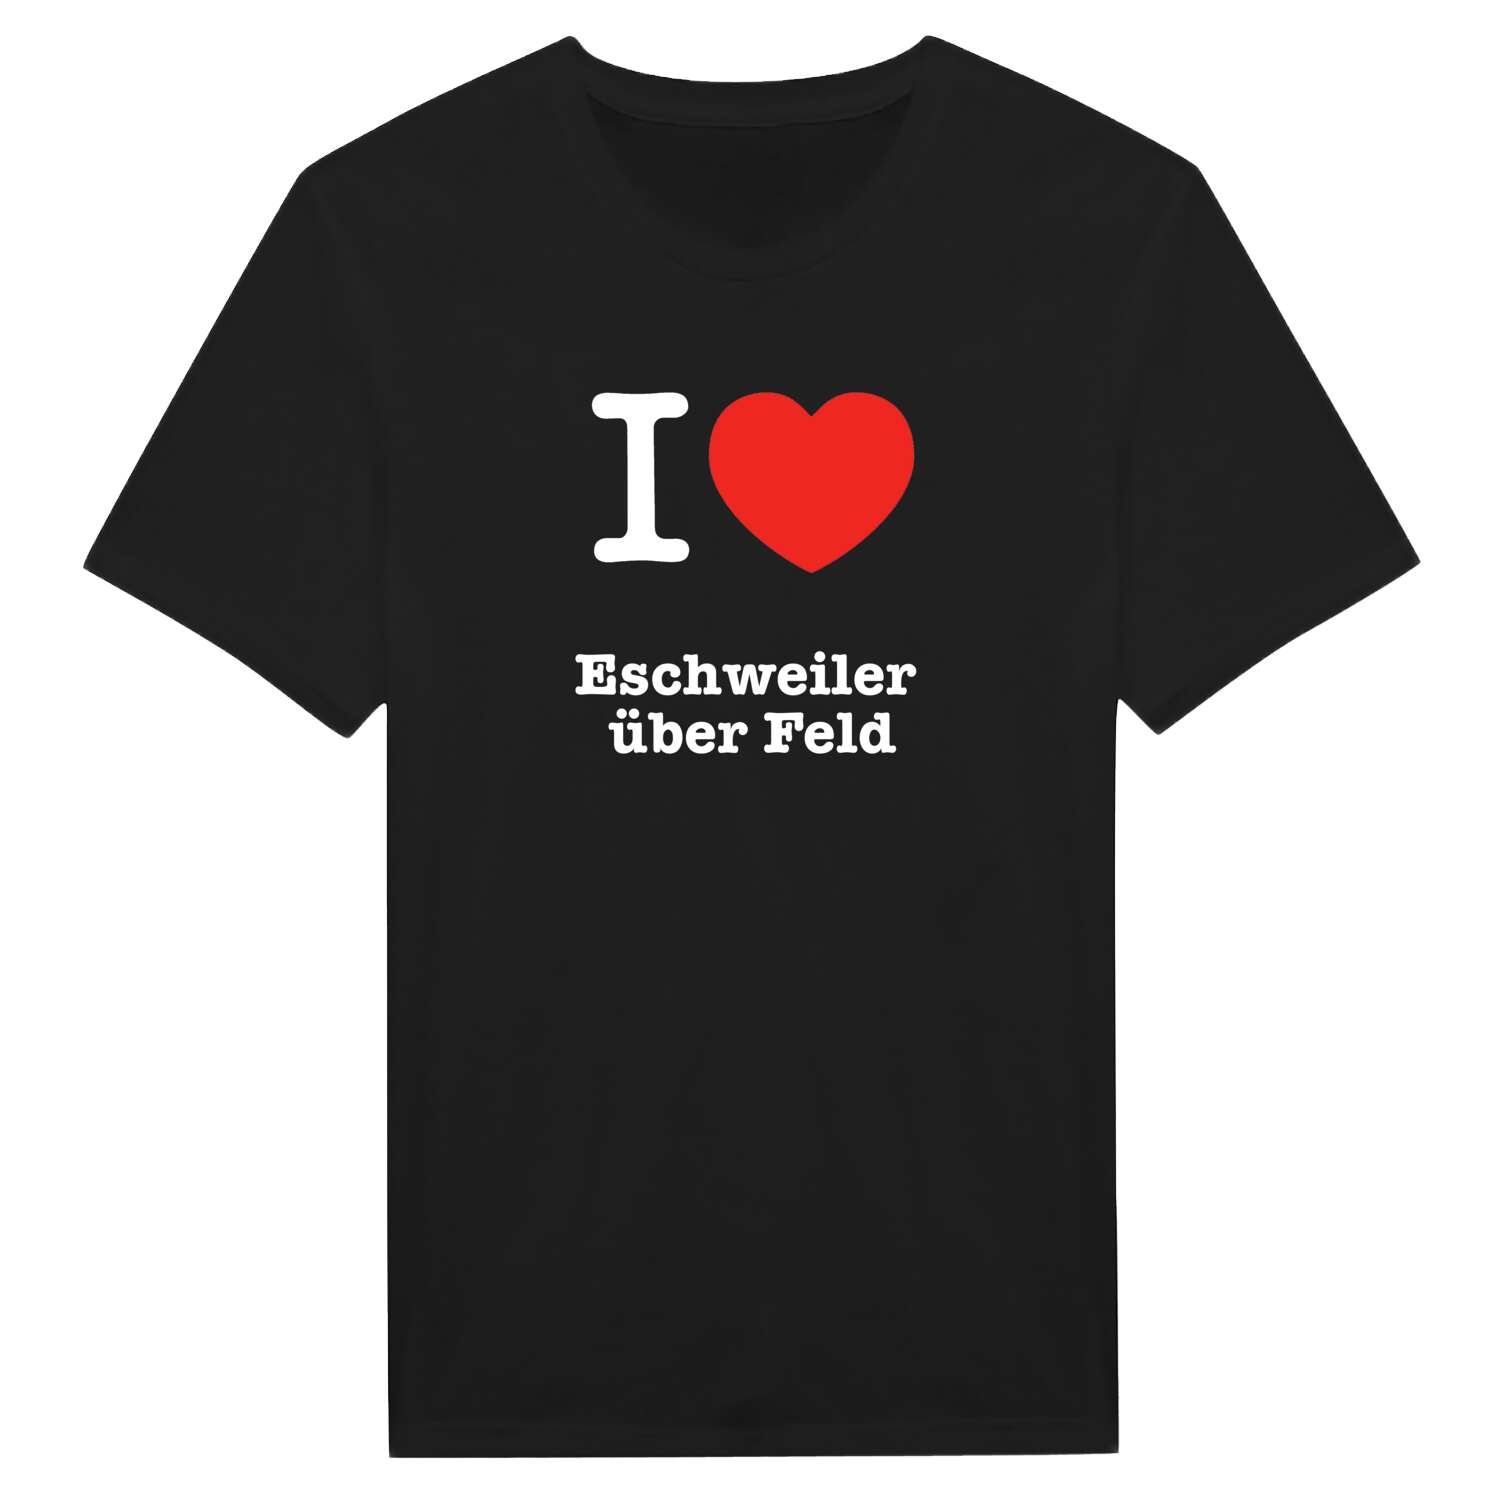 Eschweiler über Feld T-Shirt »I love«